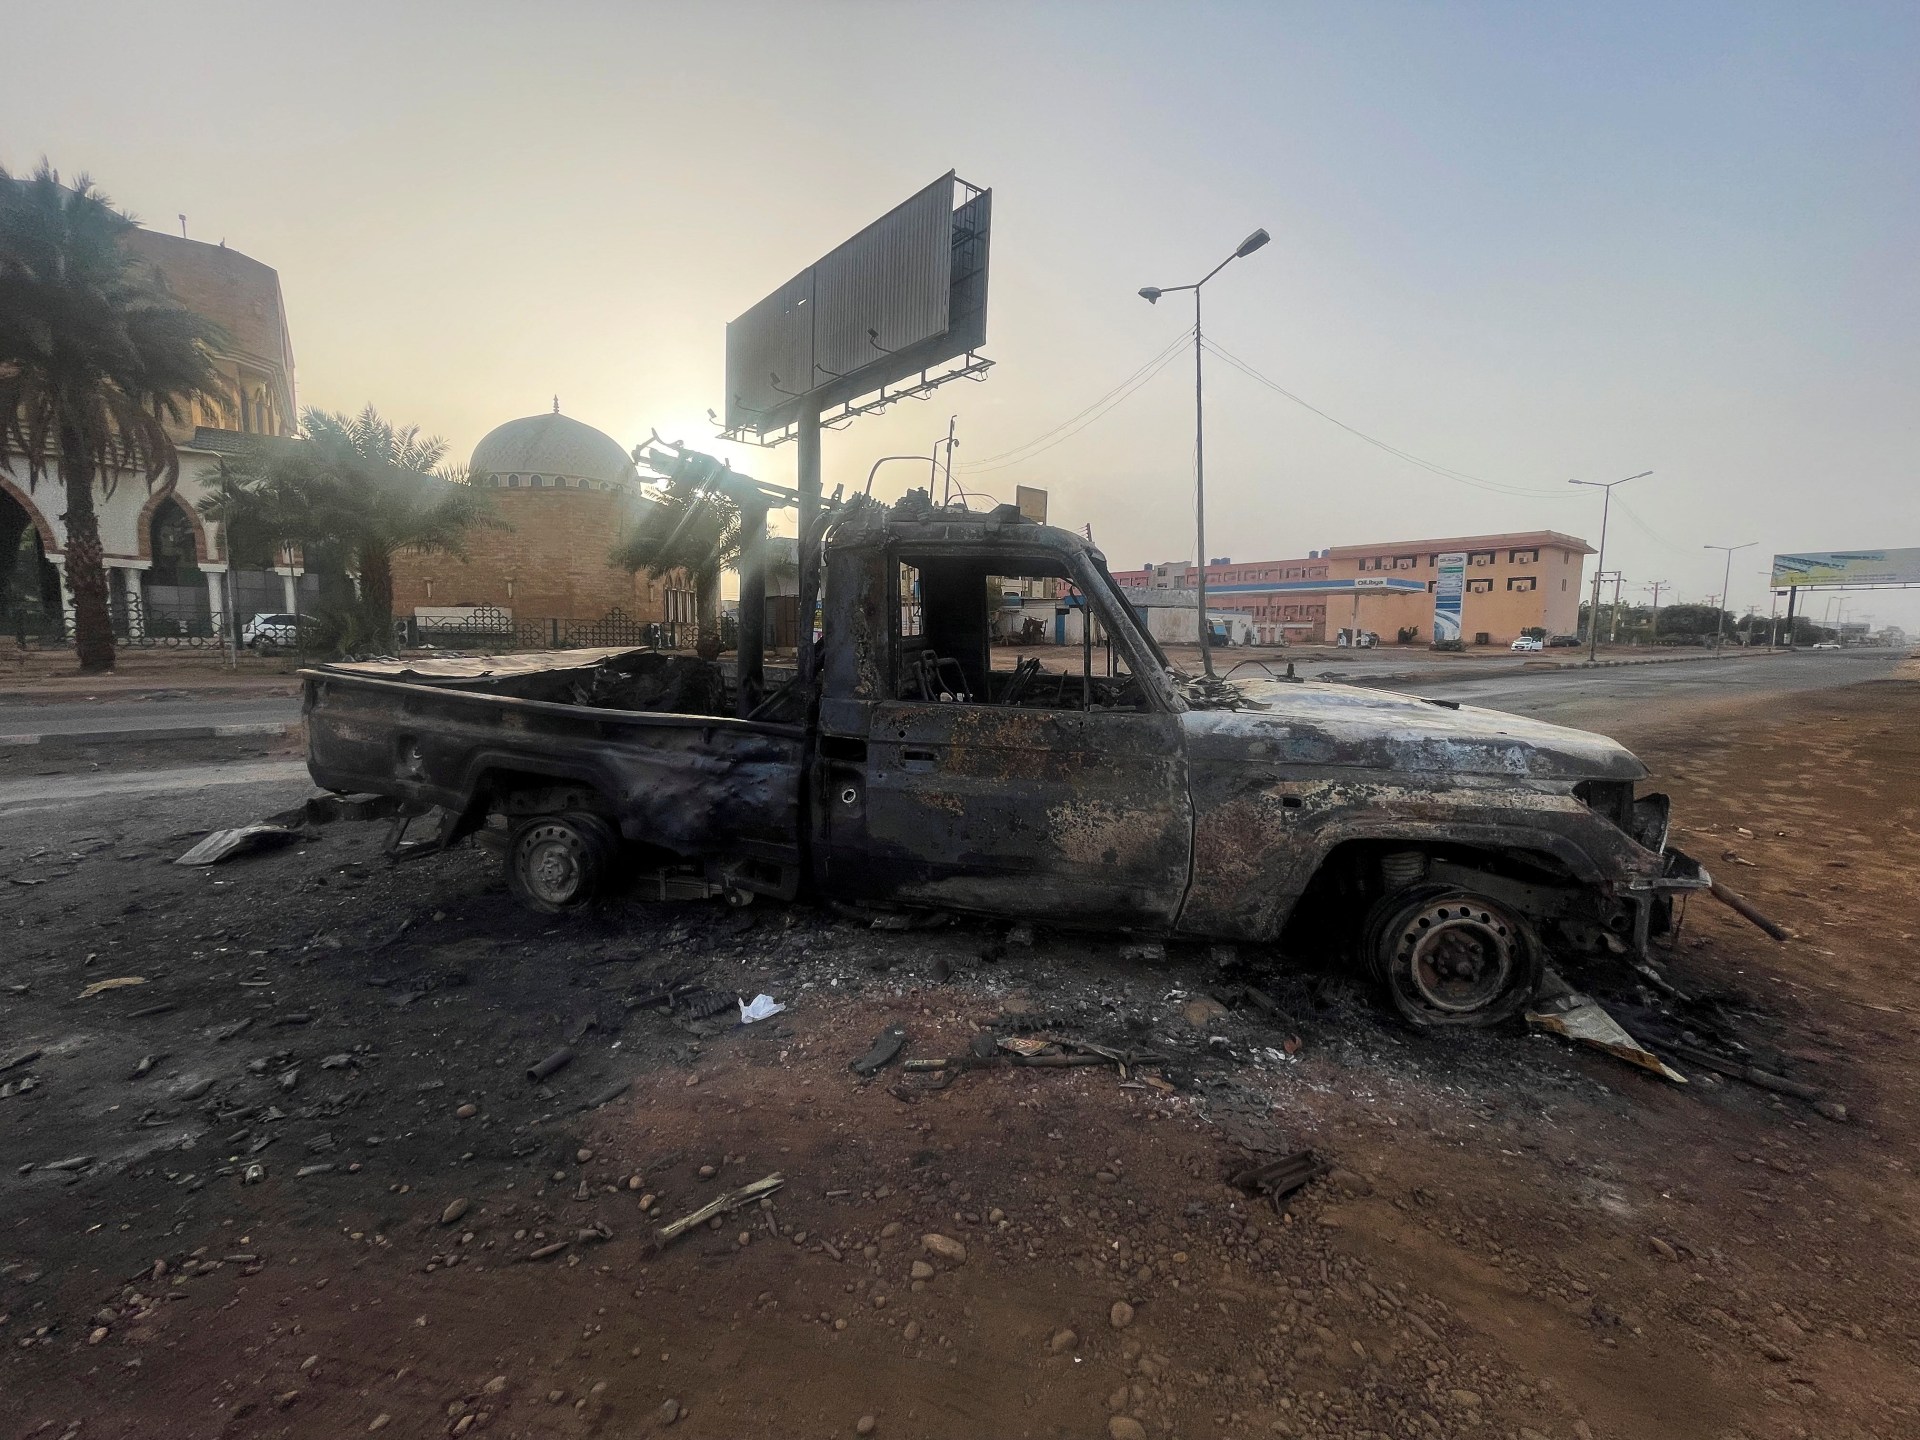 تحليل: الإمارات ومصر أقرب إلى أطراف مختلفة في الصراع السوداني |  أخبار الصراع